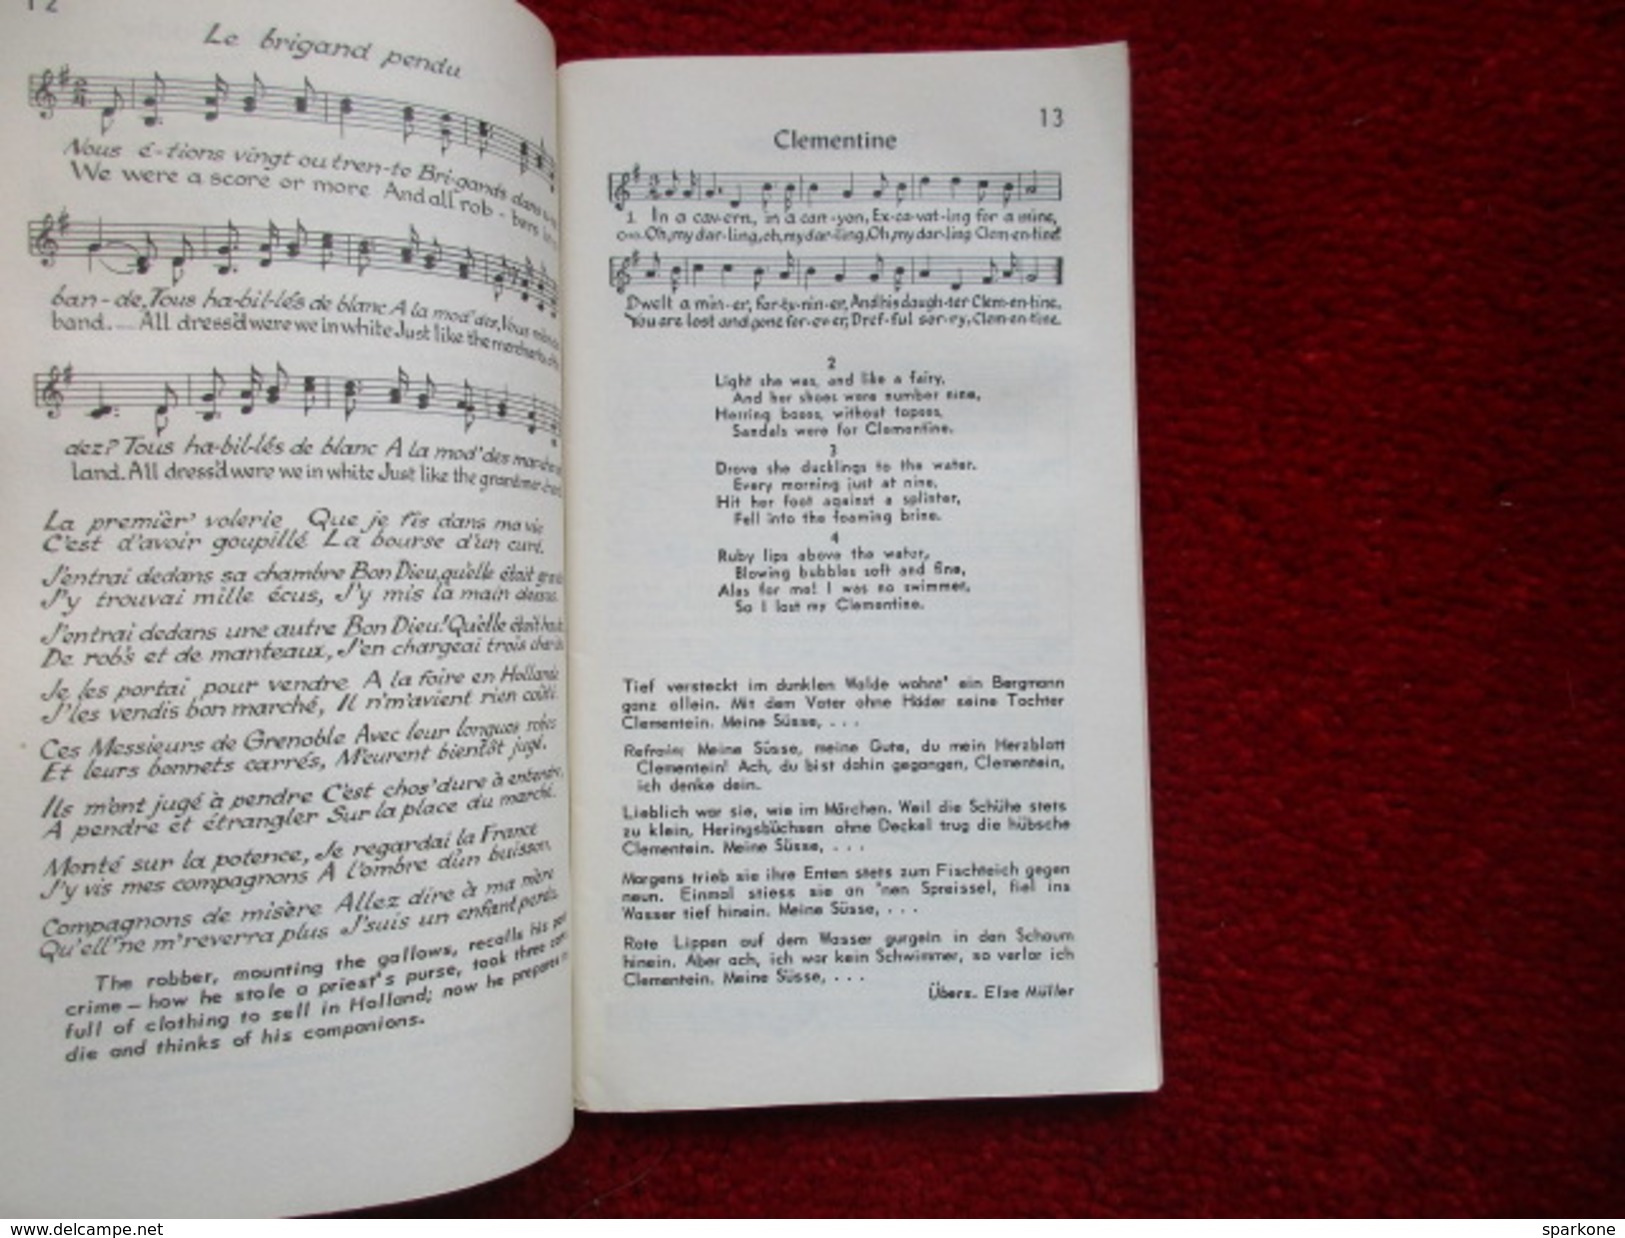 Lieder Song Chansons / éditions De 1959 - Cultural